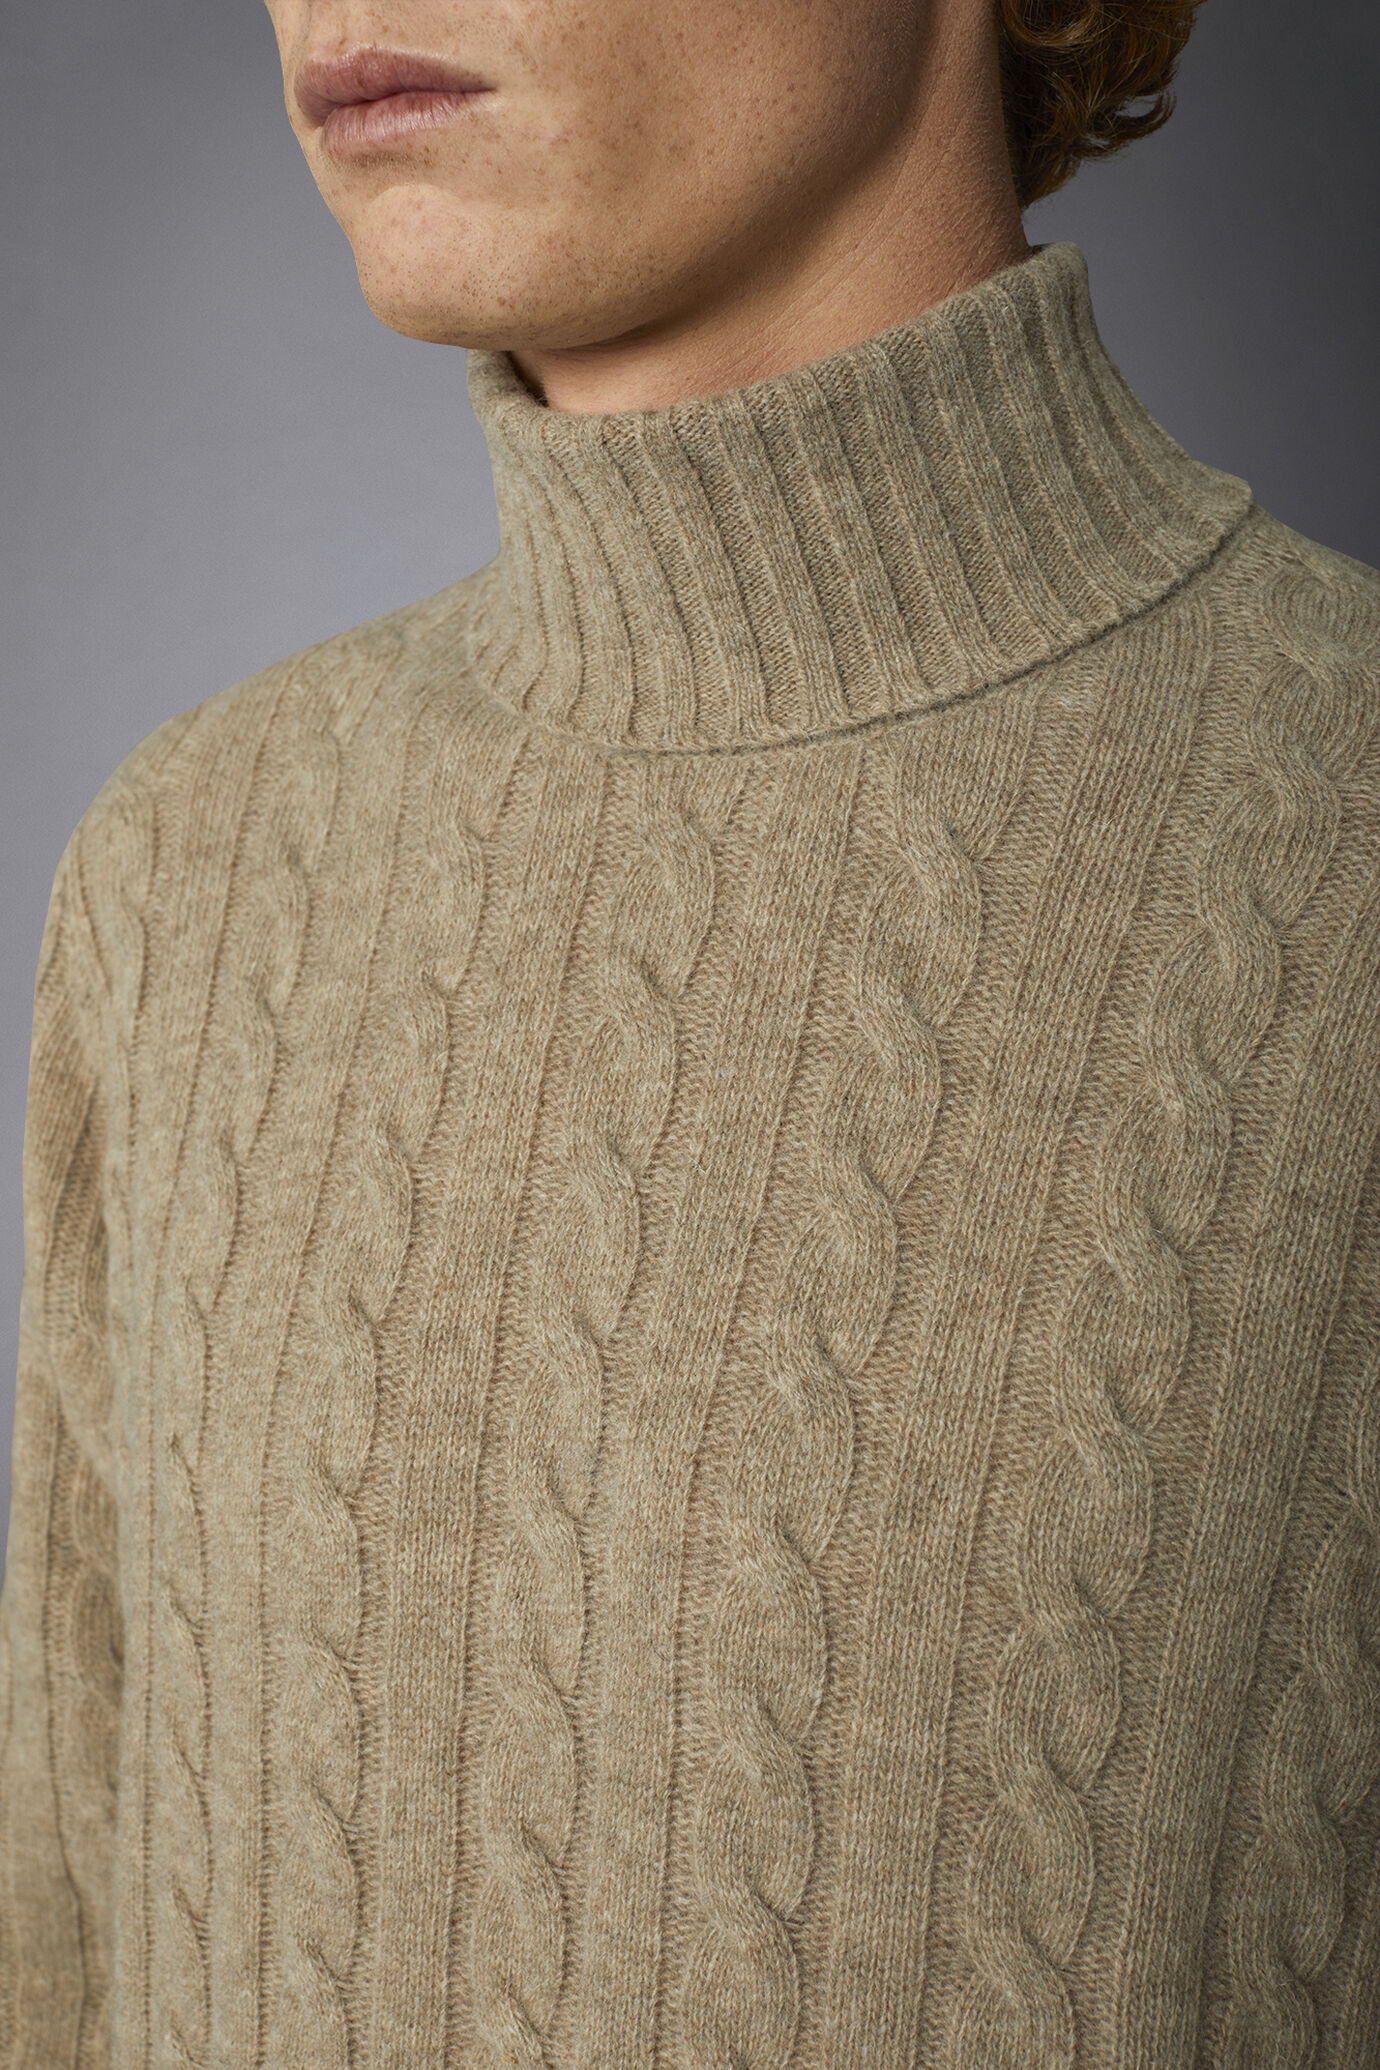 Maglia uomo a trecce collo alto in misto lana lambswool regular fit image number 2